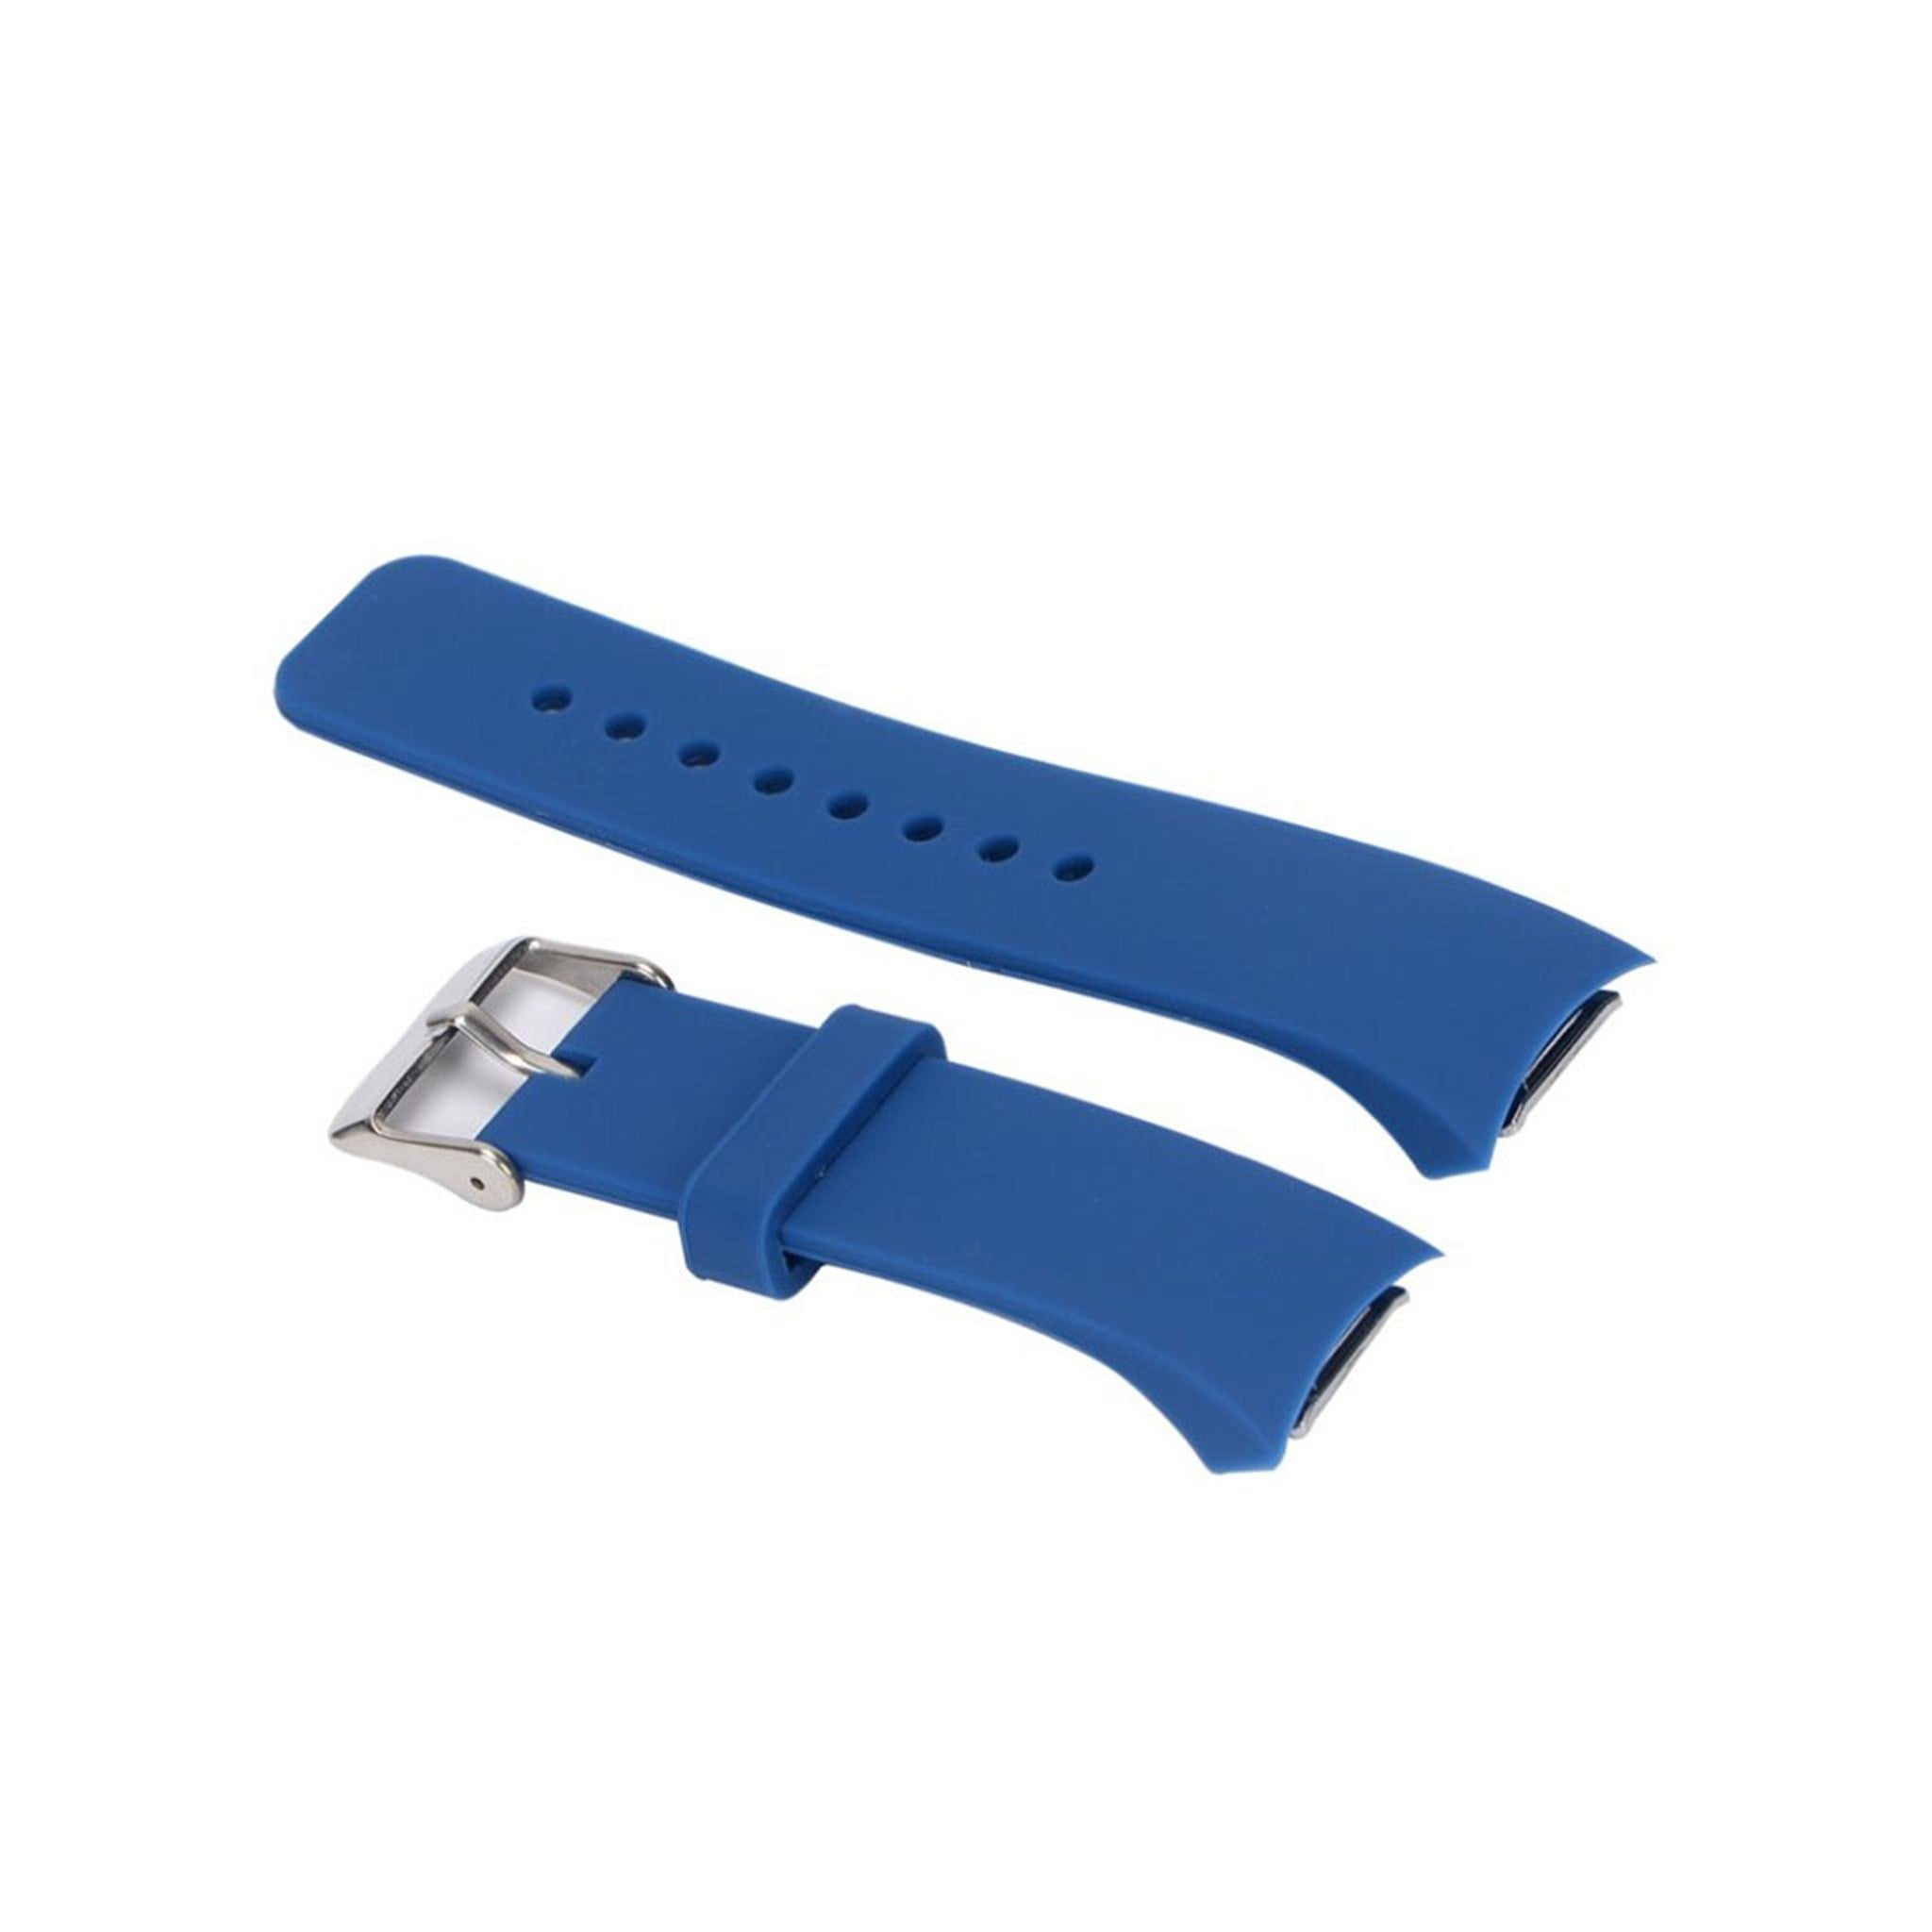 Samsung Gear S2 metal buckle silicone watch strap- Dark Blue